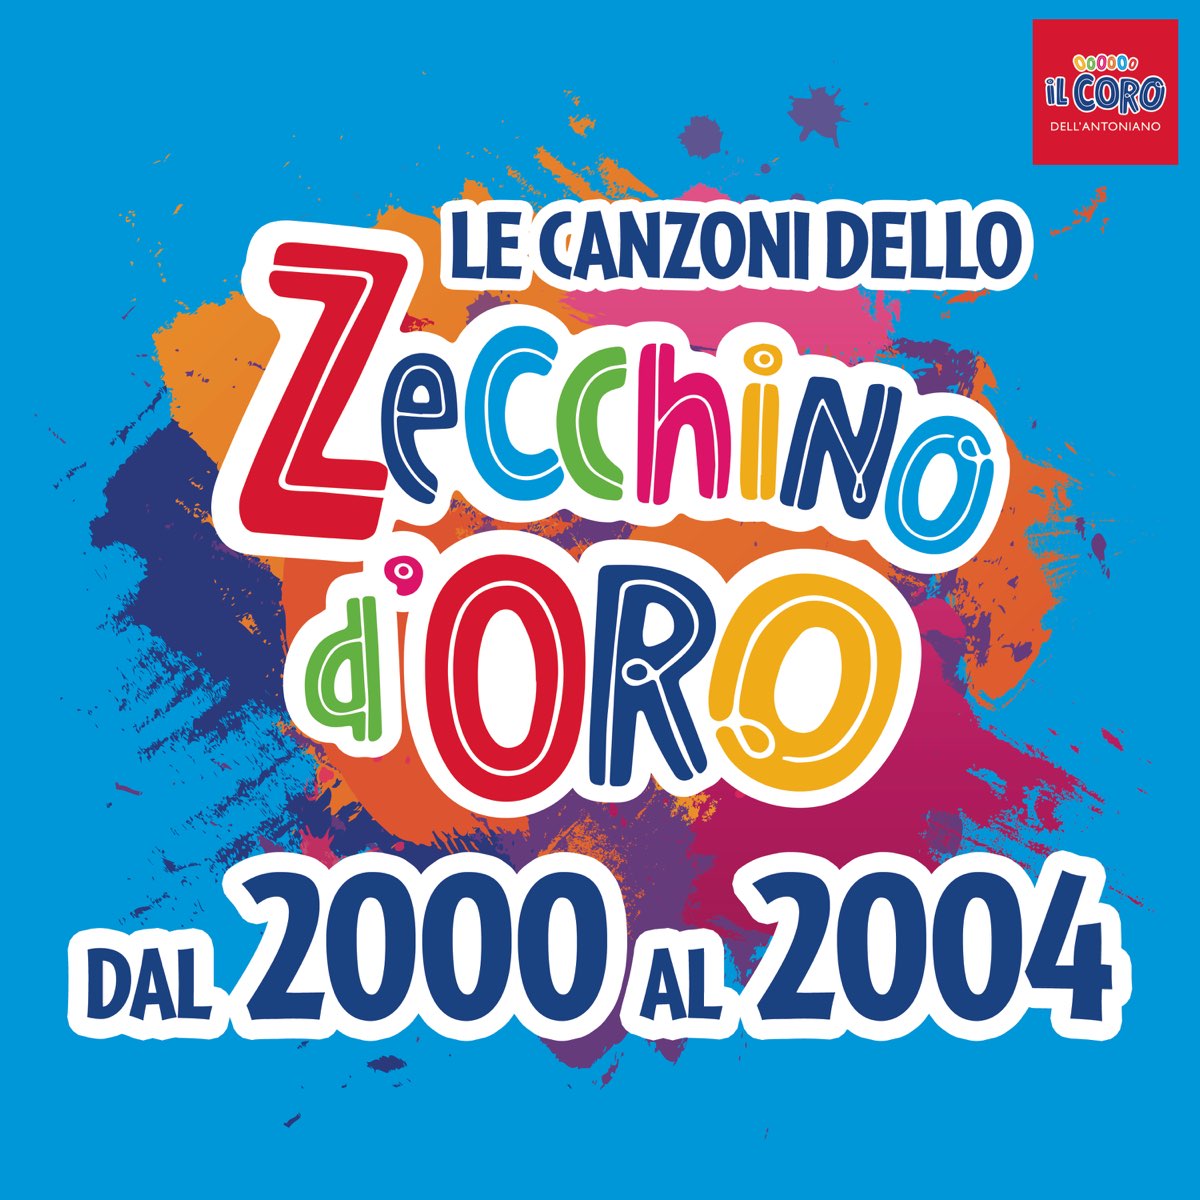 Le canzoni dello Zecchino d'oro dal 2000 al 2004 di Piccolo Coro Mariele  Ventre dell'Antoniano su Apple Music